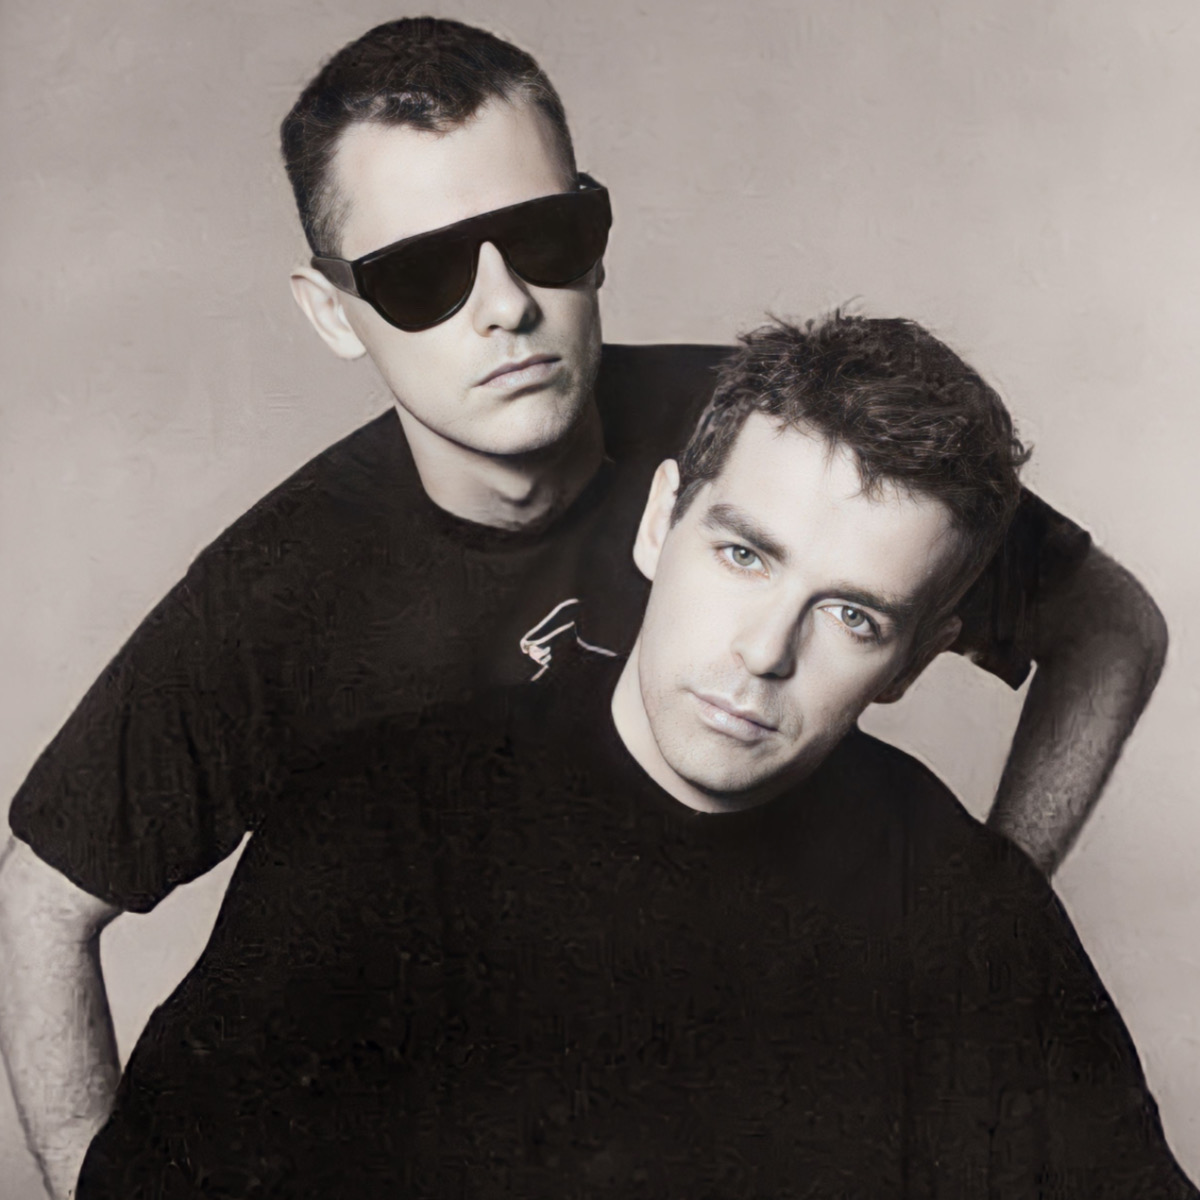 Mitglieder der Pet Shop Boys, Chris Lowe und Neil Tennant